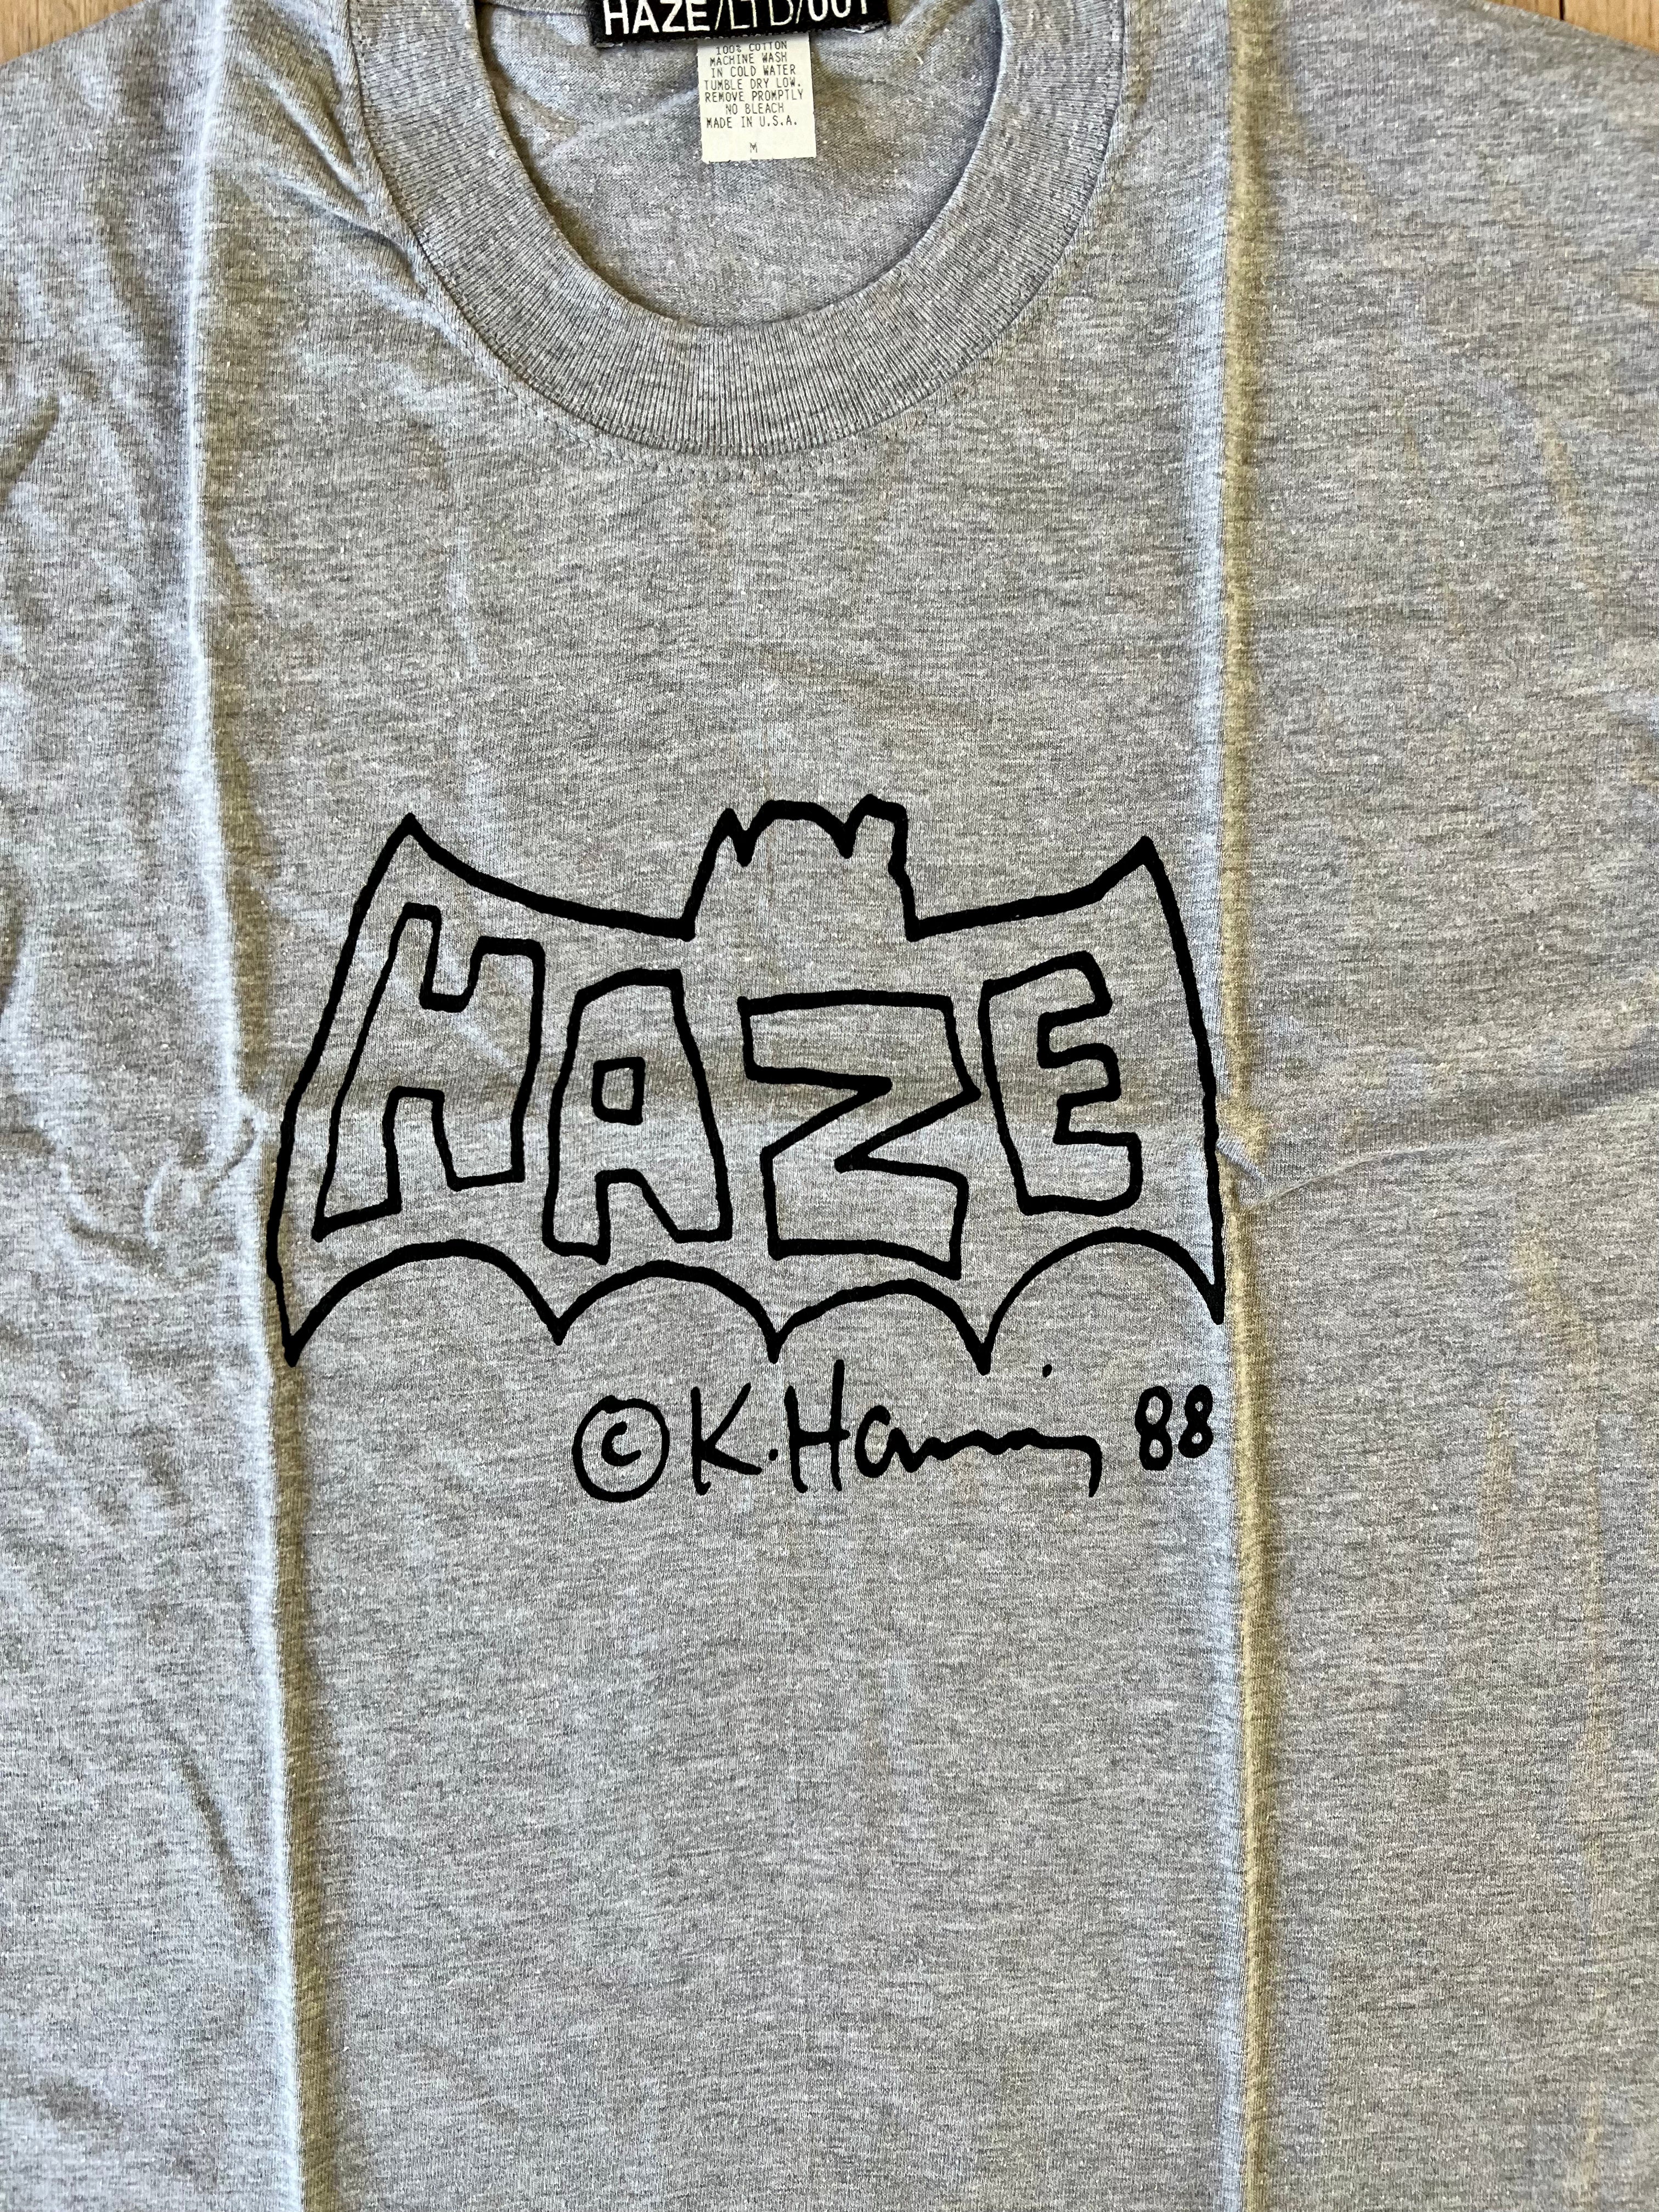 Keith Haring x Haze, Haze Bat, c. 1998